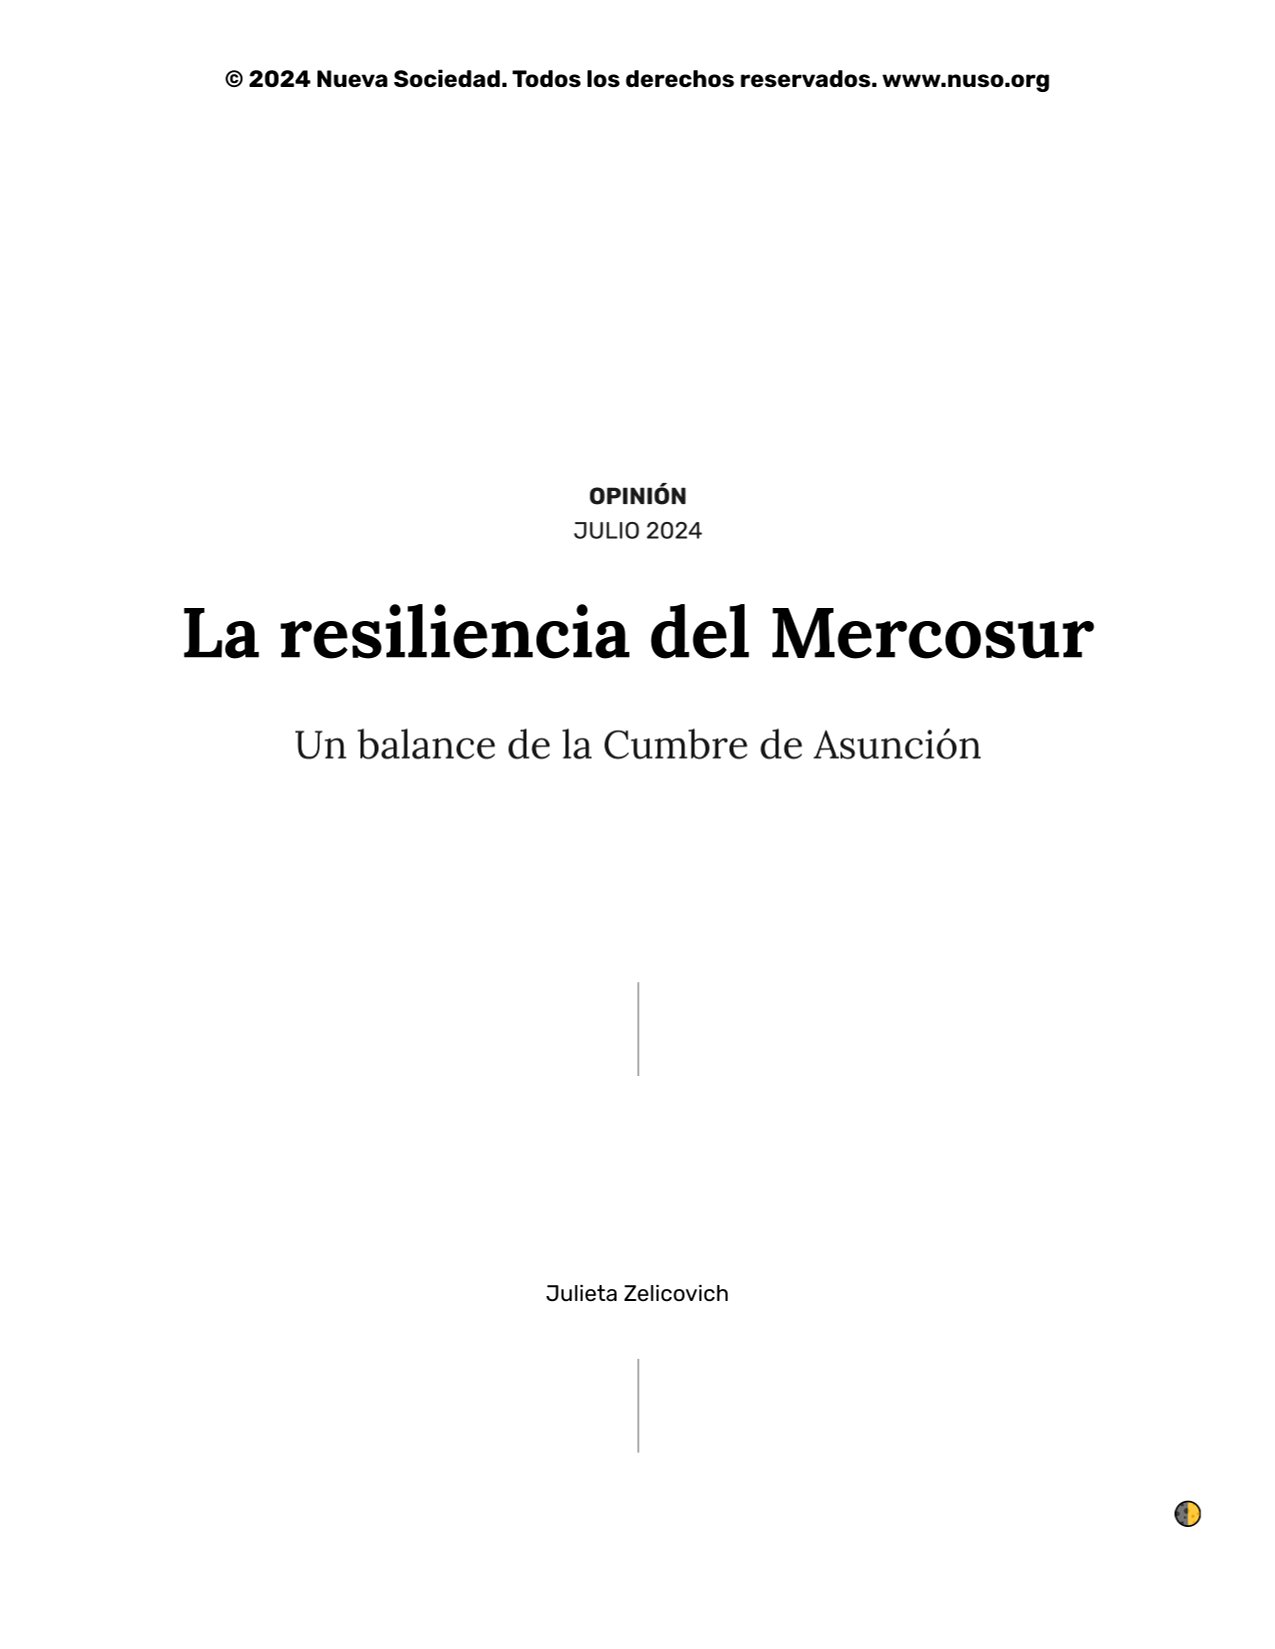 La resiliencia del Mercosur. Nueva Sociedad, julio de 2024